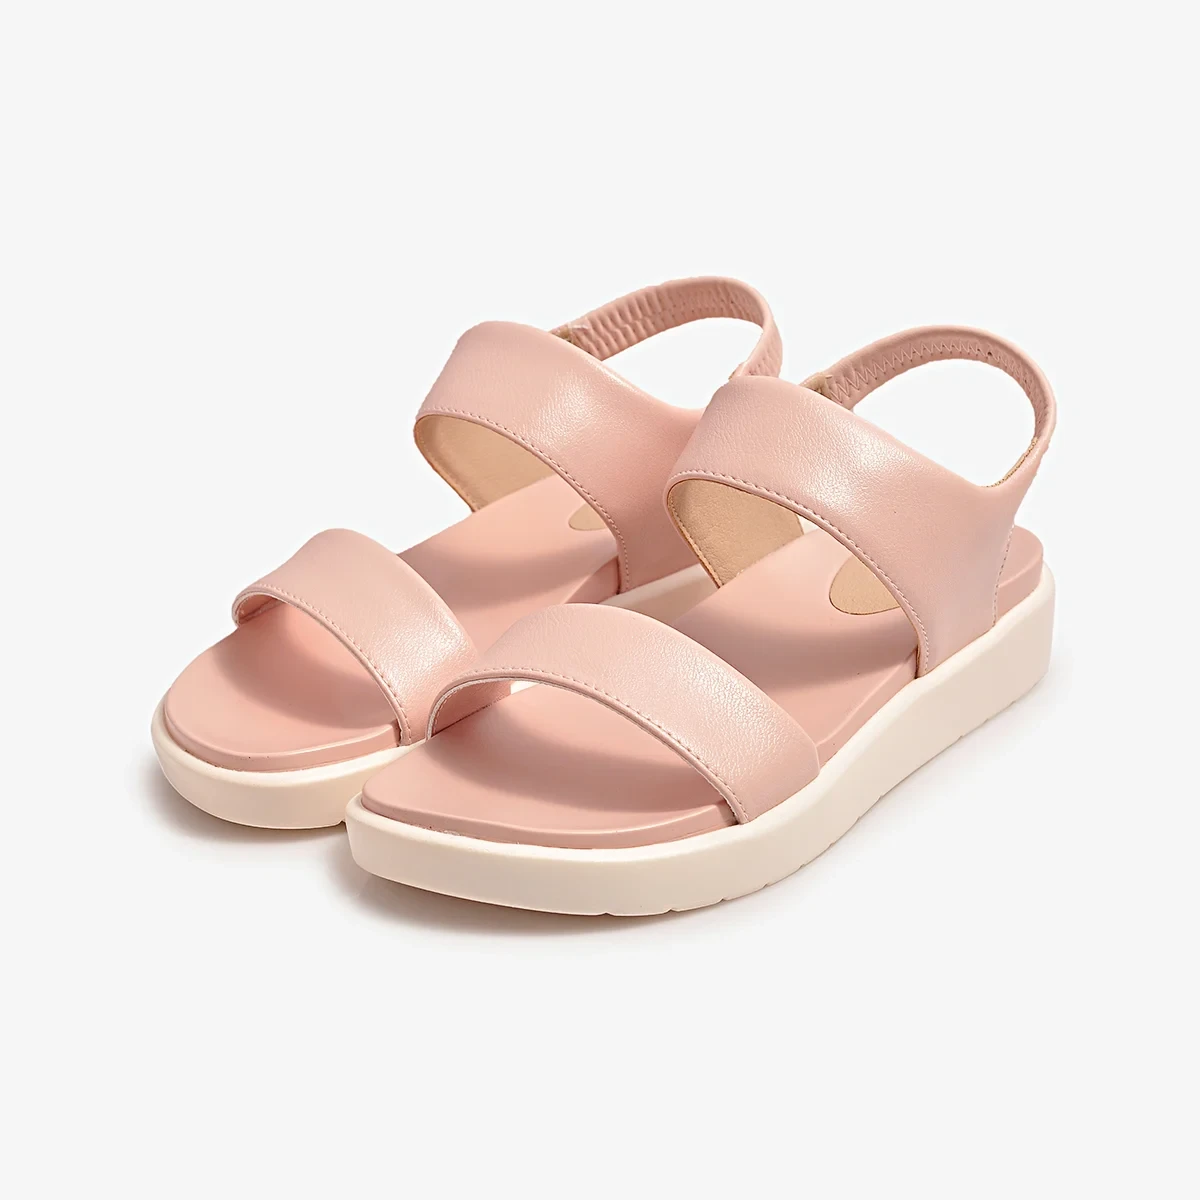 Sandal Nữ Biti’s Êmbrace - Blush Pink DPW070500